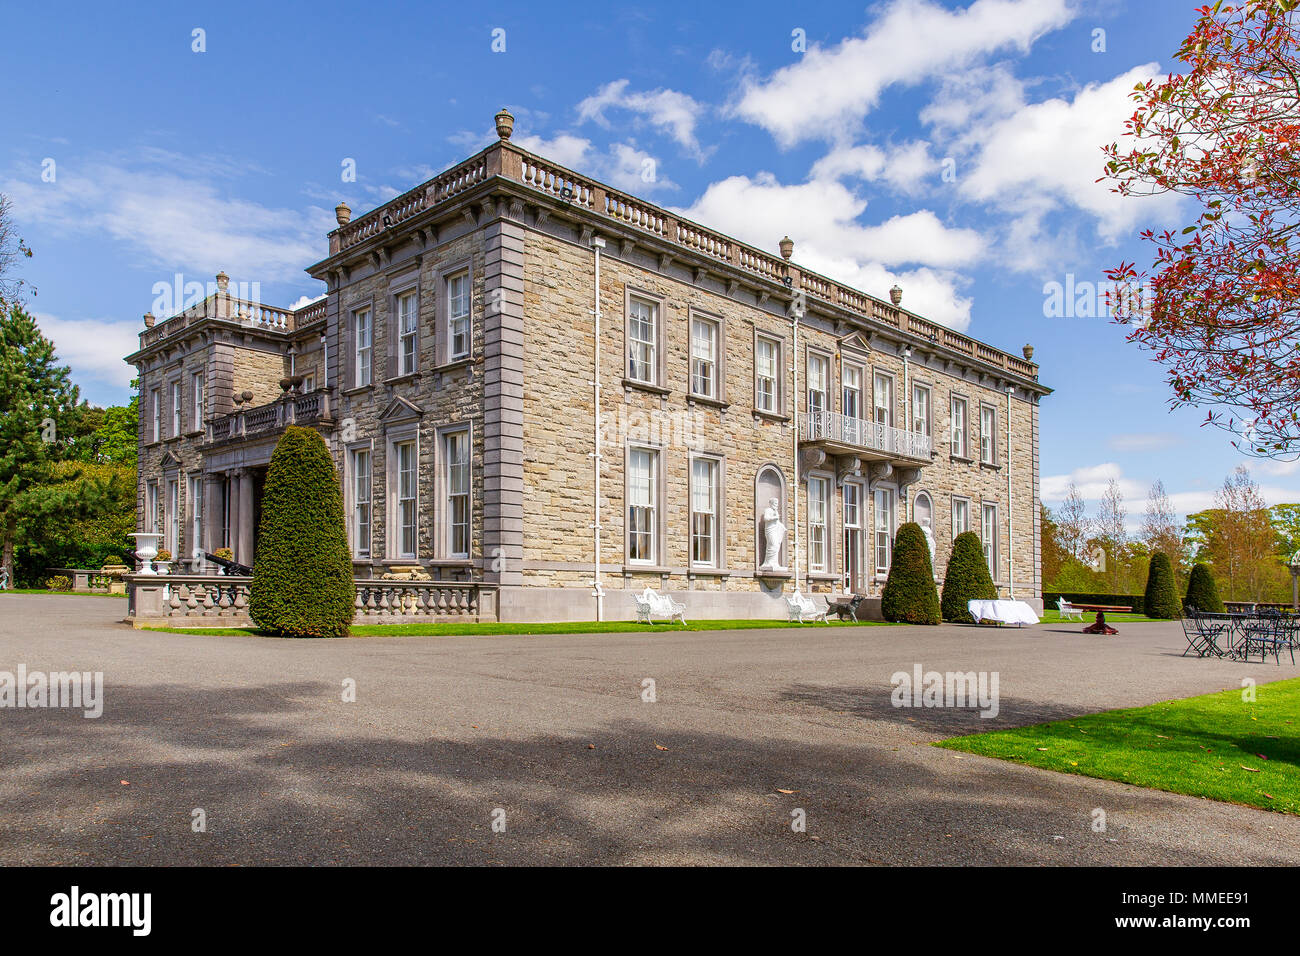 Das Manor House Gebäude auf dem Gelände des Palmerstown Haus Immobilien in Johnstown, Grafschaft Kildare, Irland. Irische Zeitraum Residence. Stockfoto